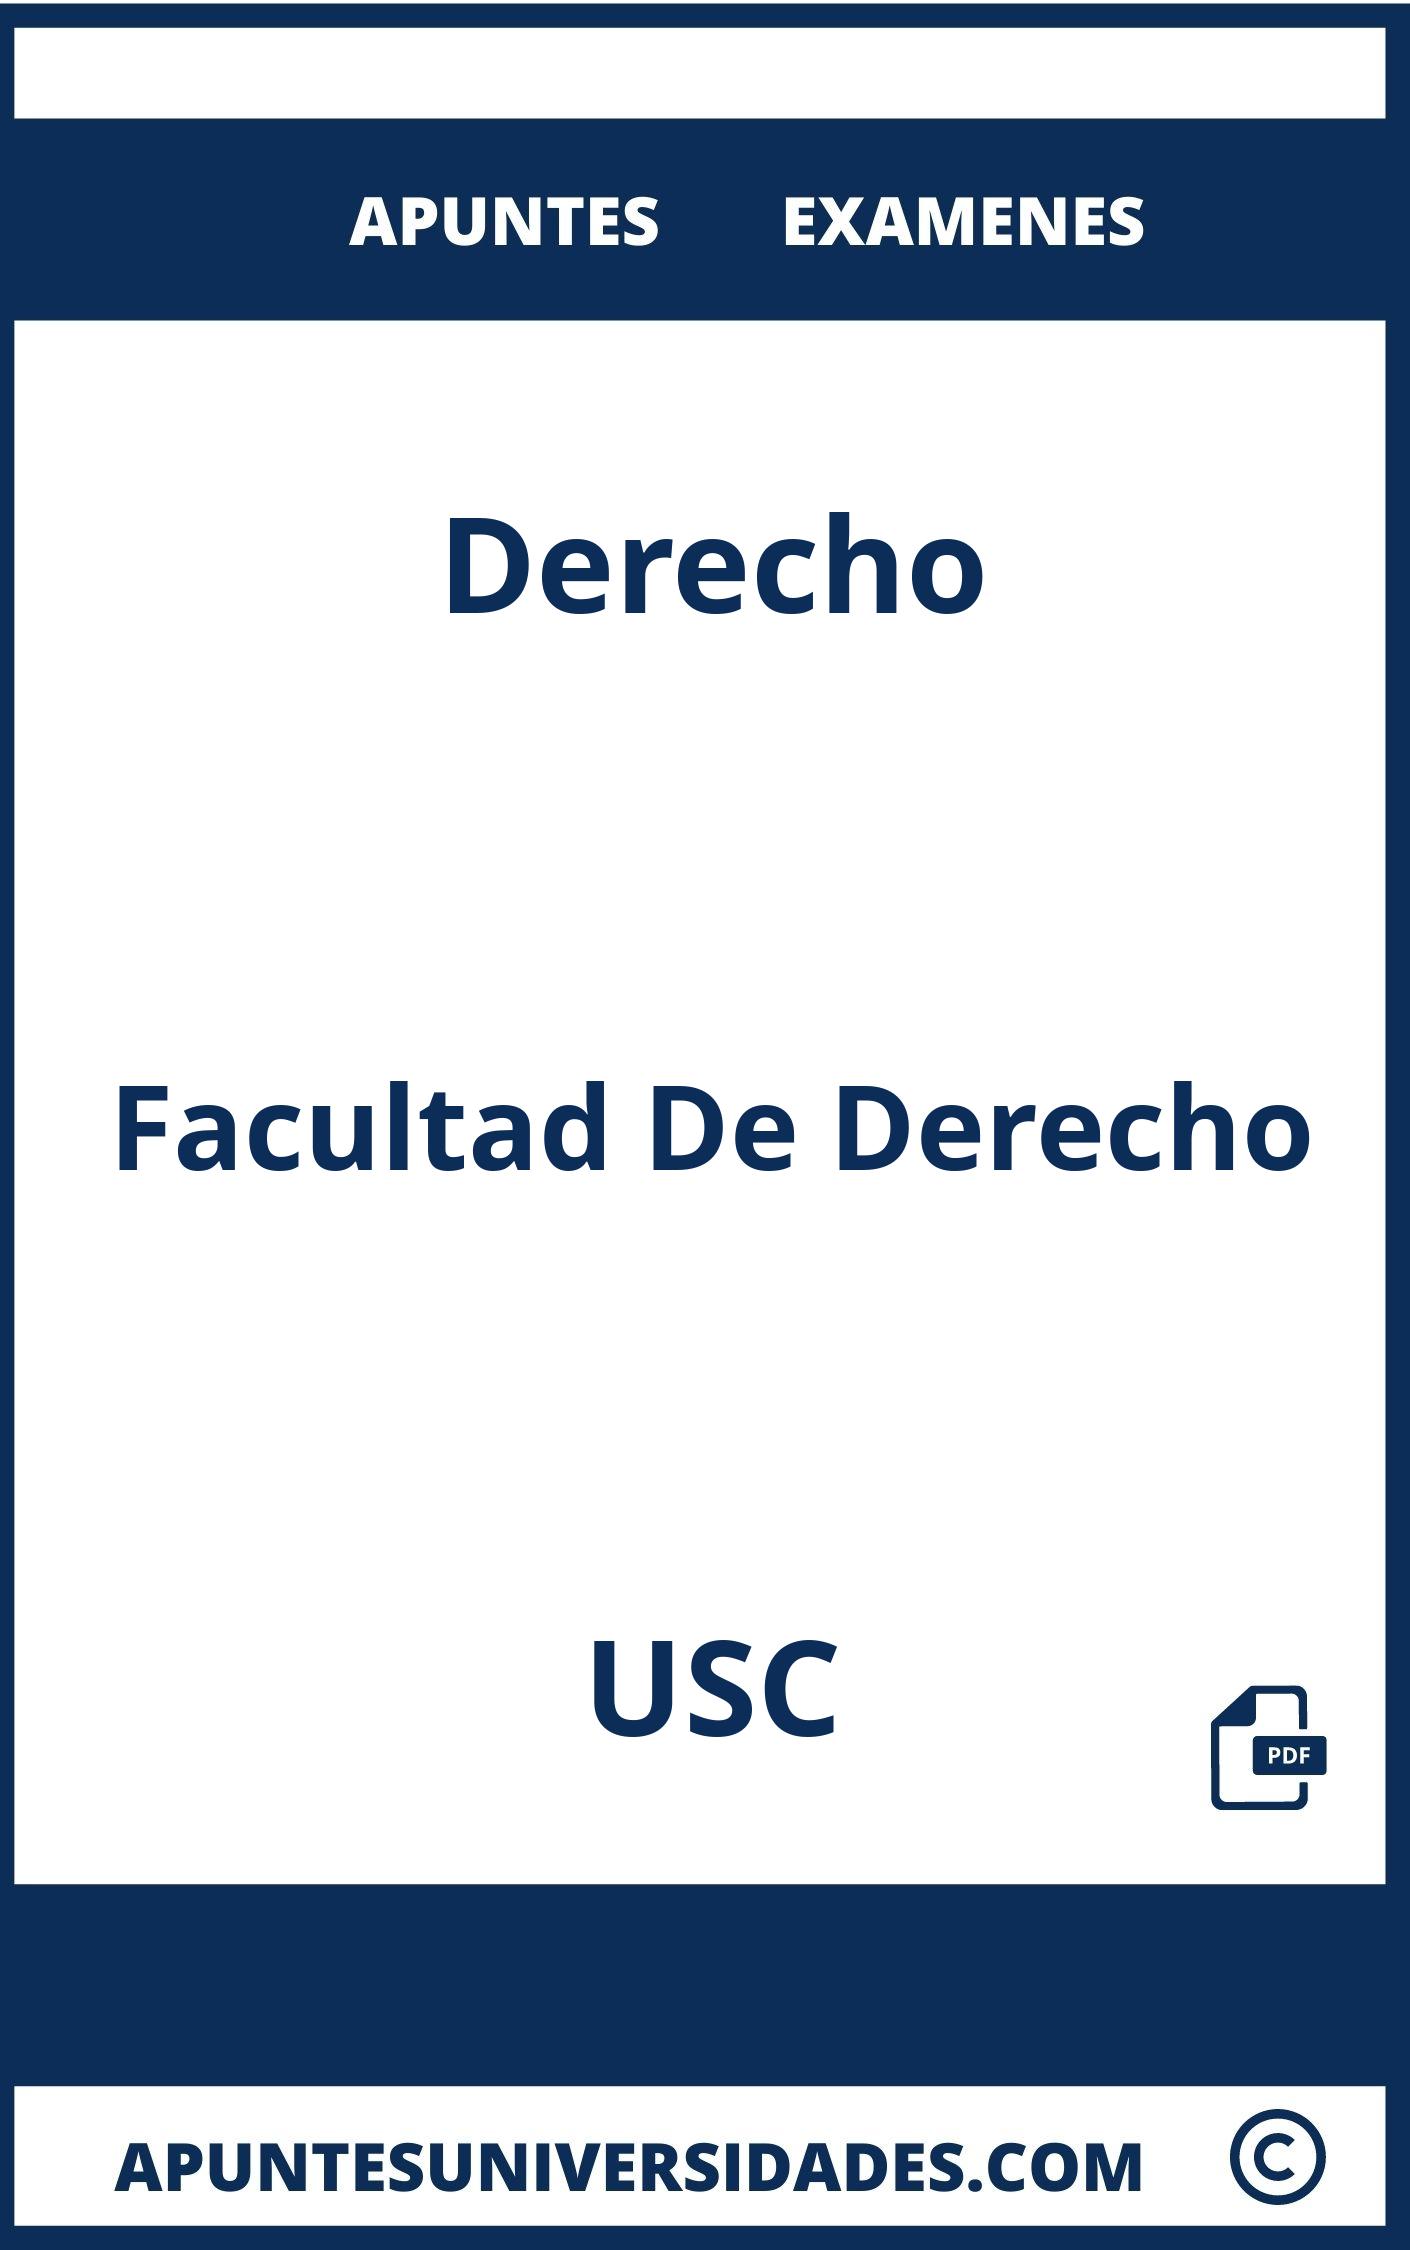 Apuntes y Examenes Derecho USC